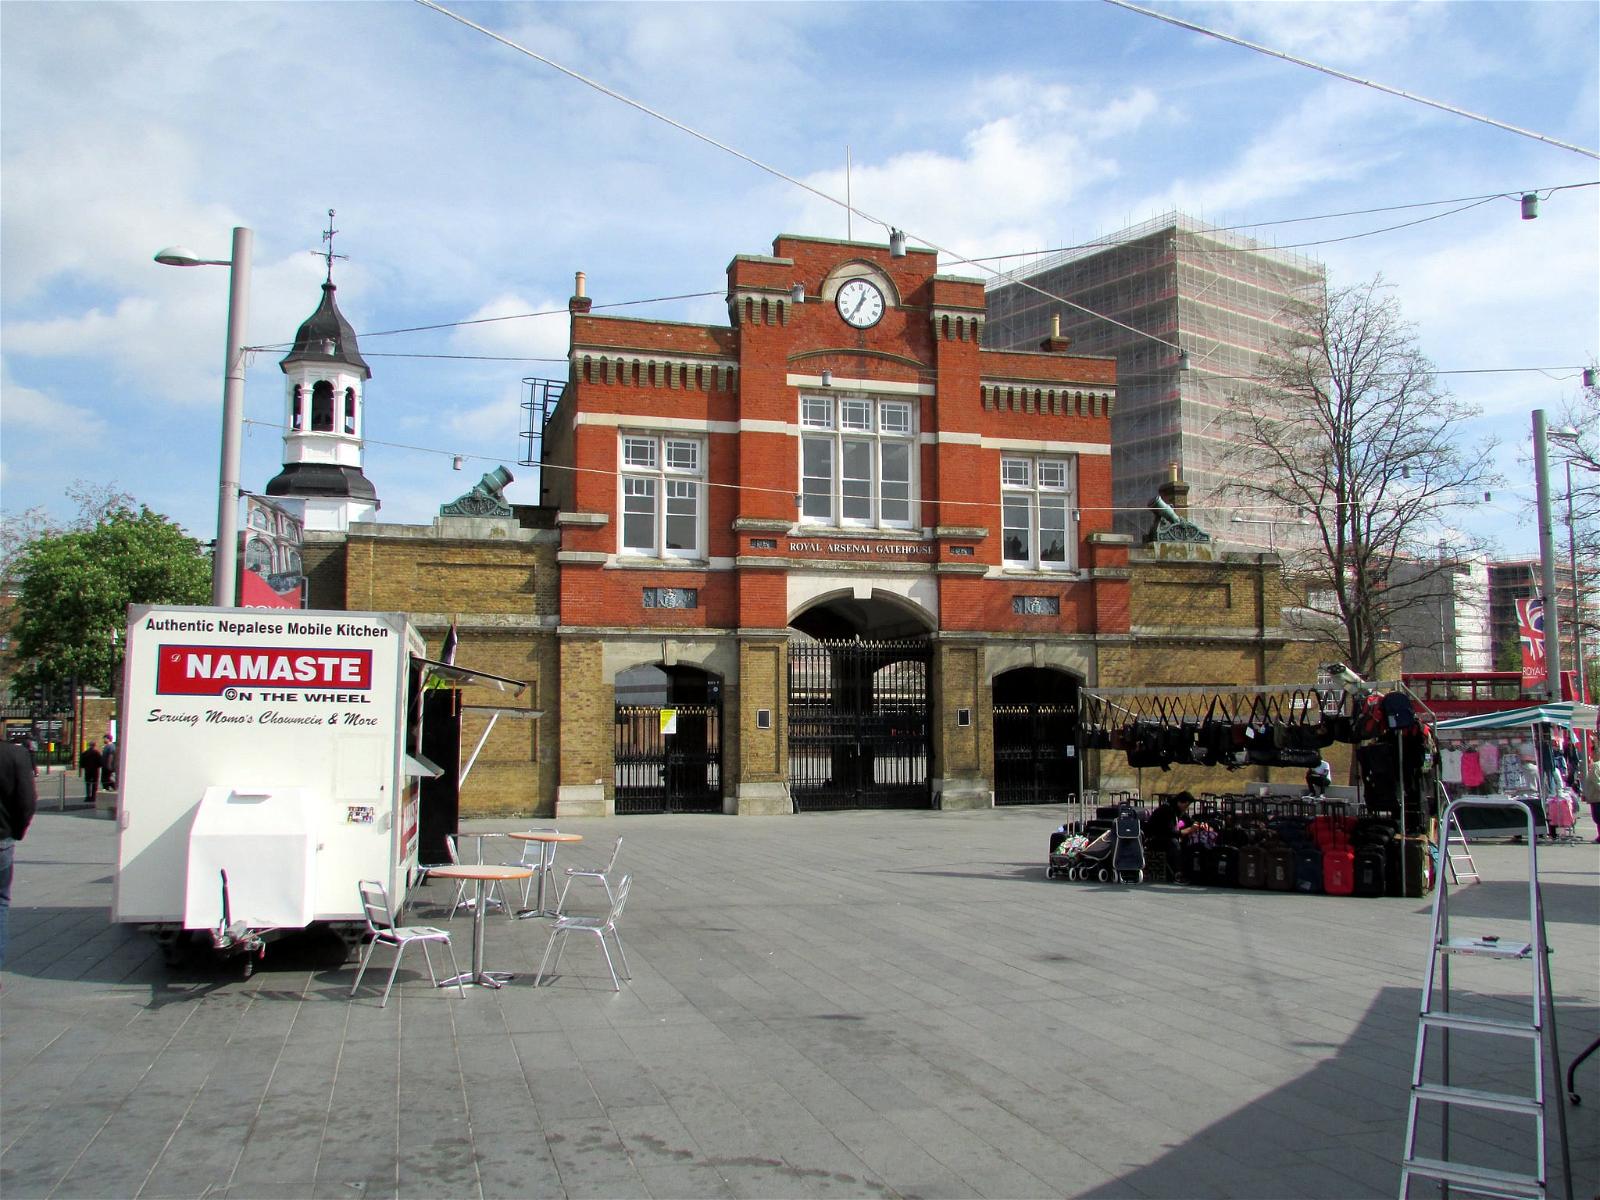 Obraz Royal Arsenal Gatehouse. london woolwich